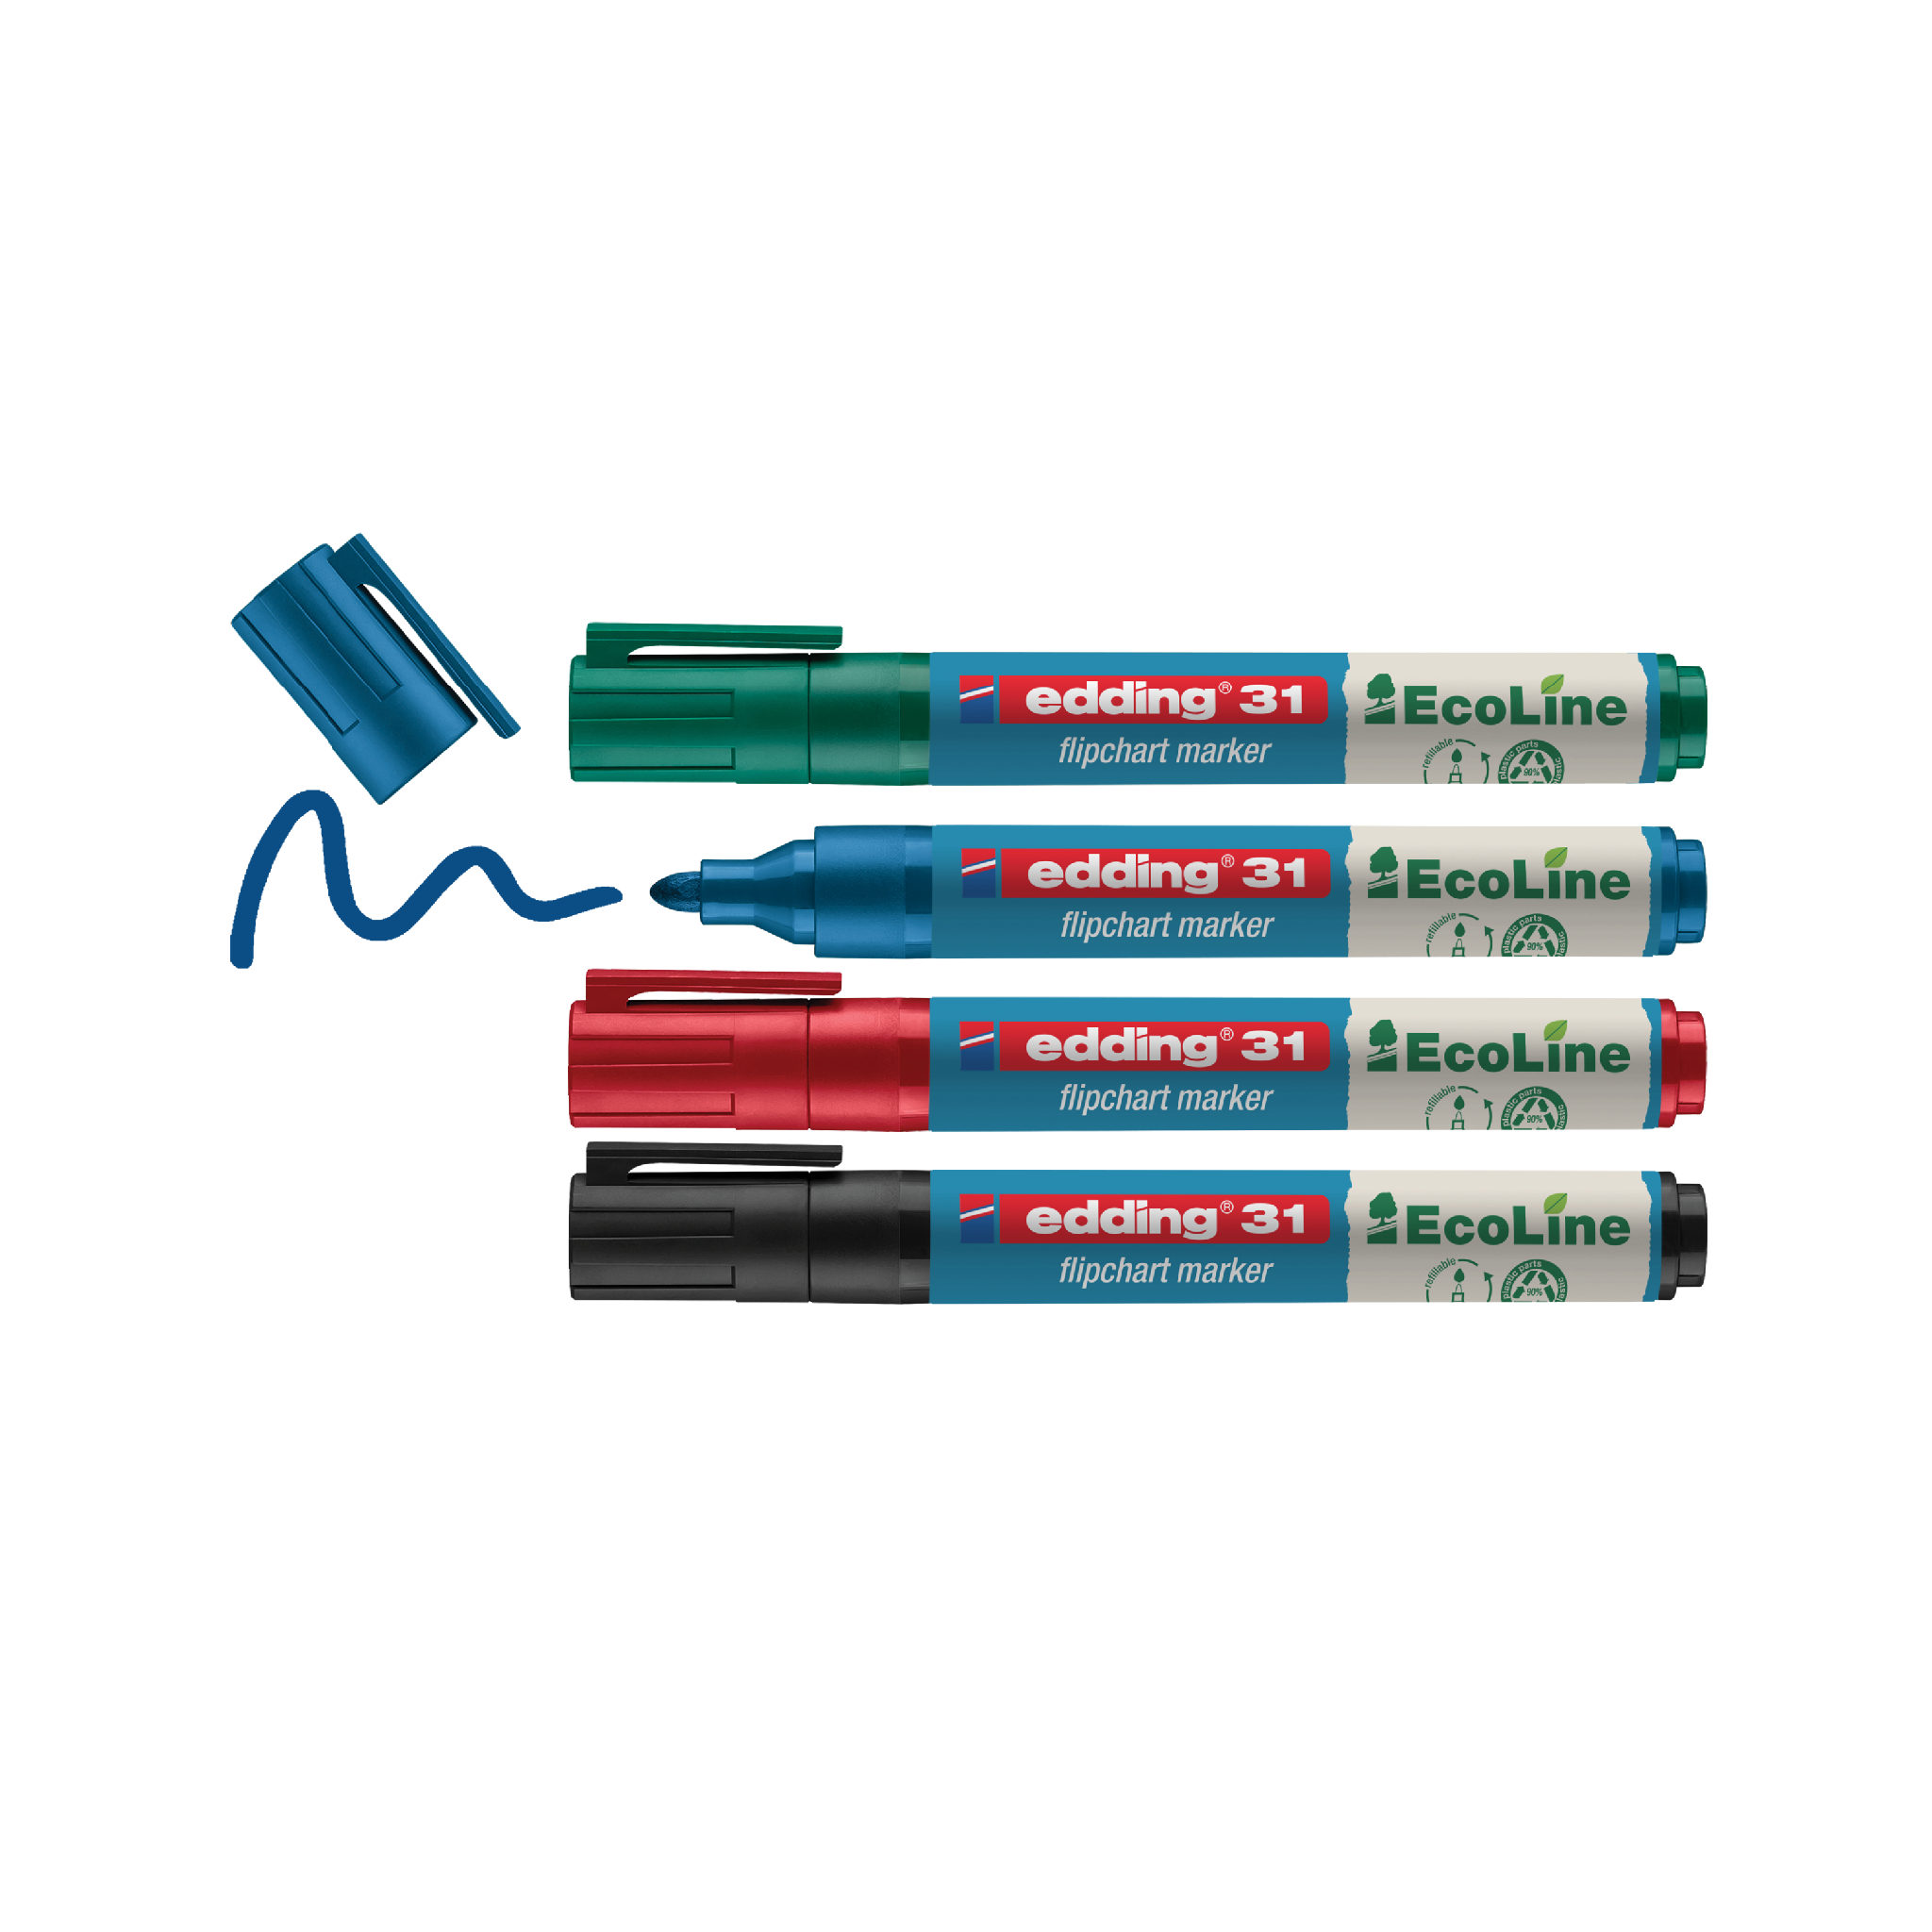 Eine Sammlung von sechs edding 31 EcoLine Flipchartmarkern in einer Mischung aus Blau, Grün und Rot, mit zwei abgenommenen Kappen und einem Kringel blauer Tinte daneben.